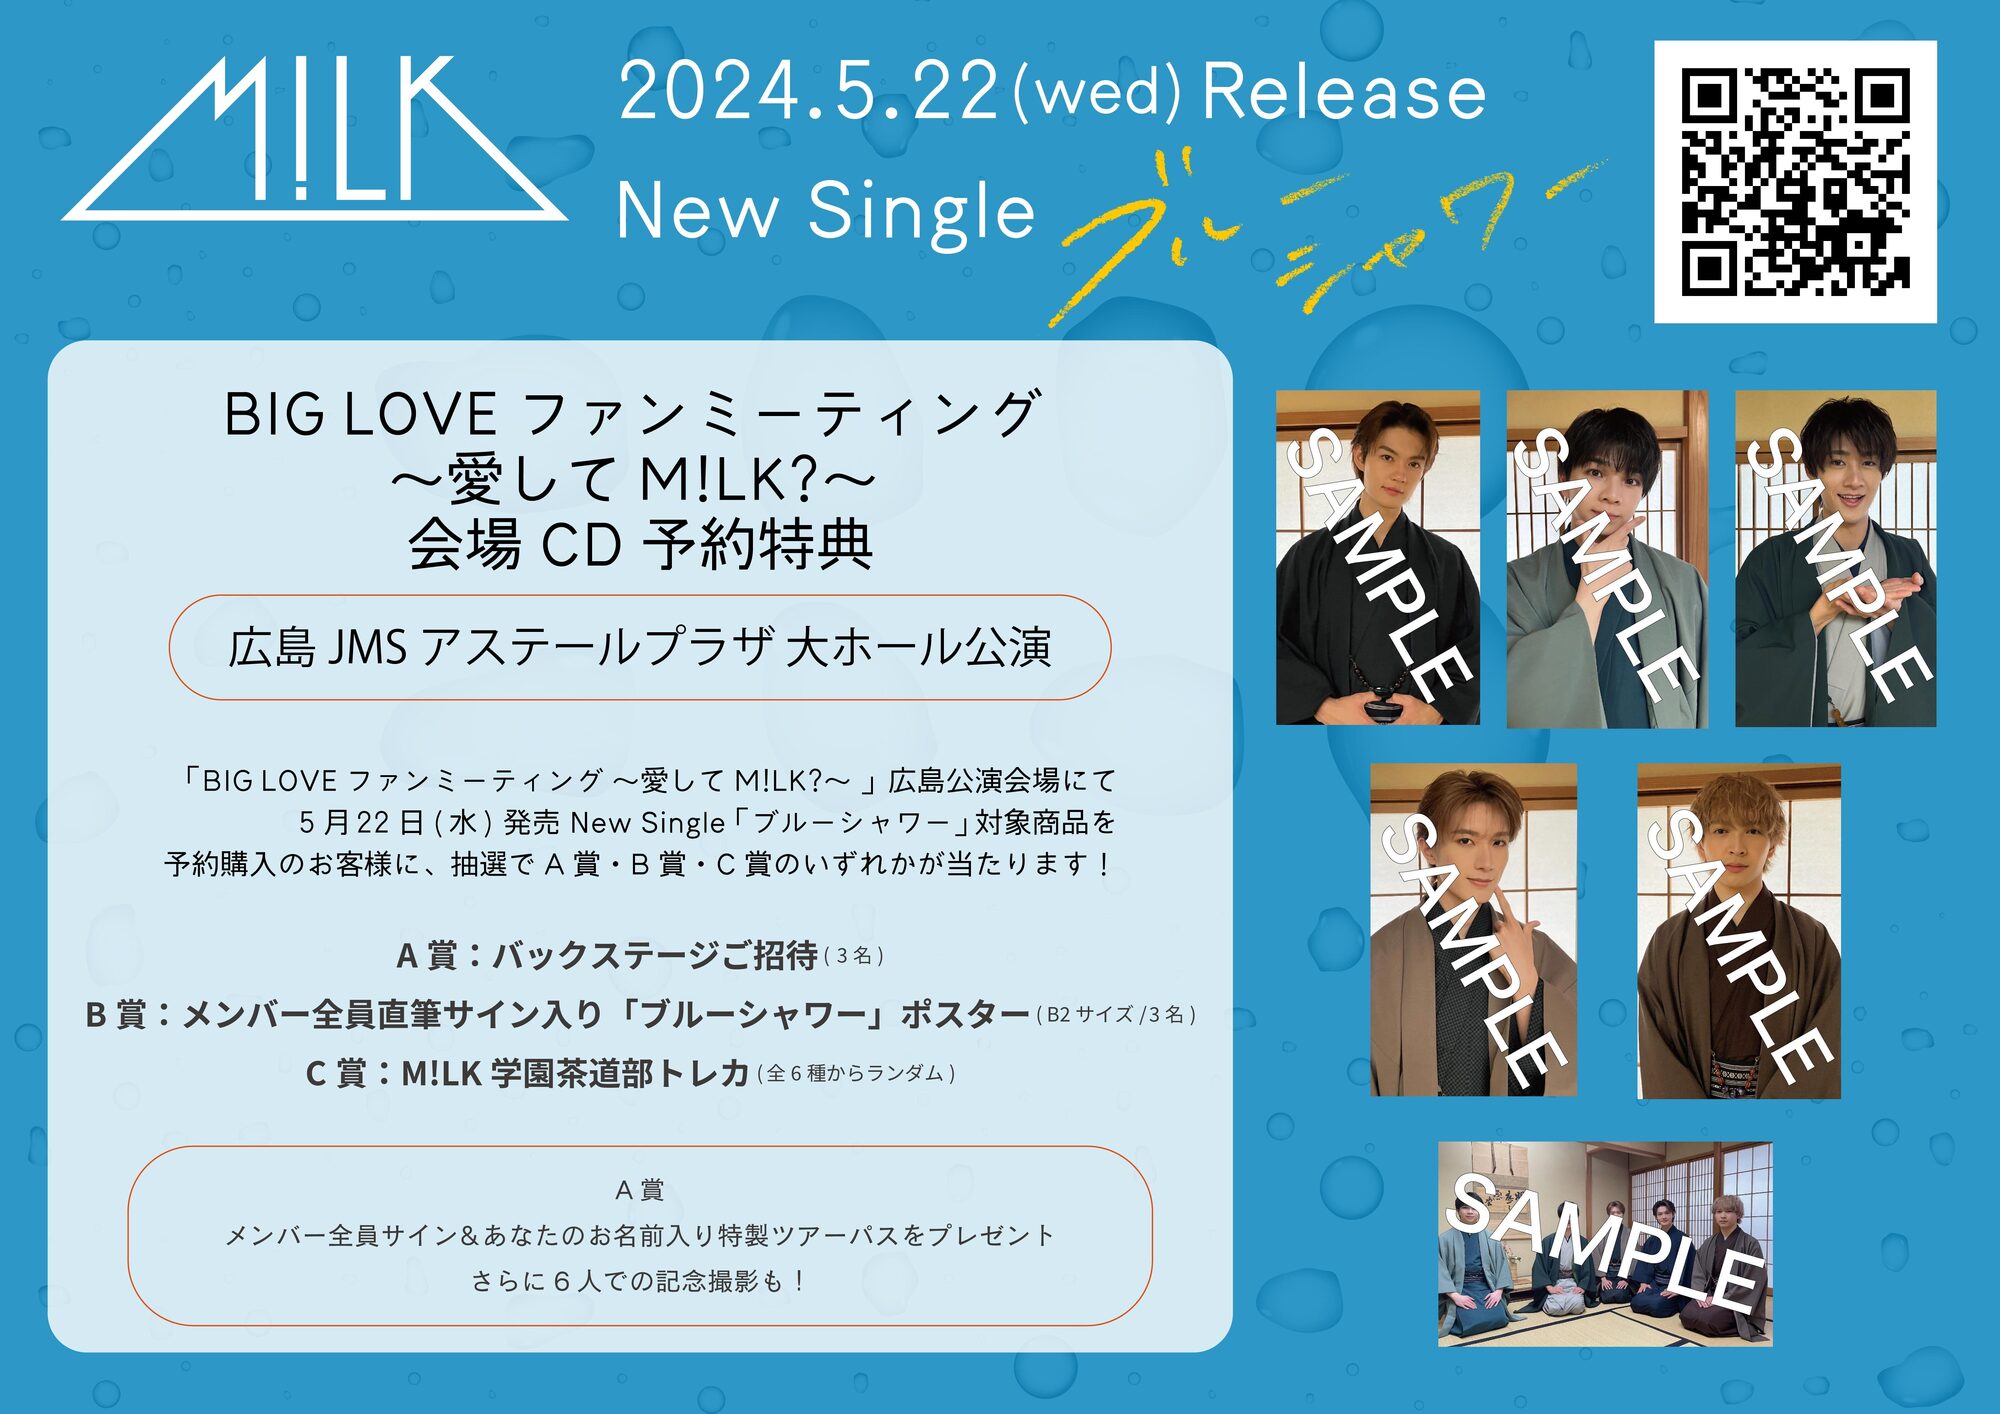 4月29日(月・祝)開催「BIG LOVE ファンミーティング 〜愛してM!LK?〜 」(広島JMSアステールプラザ 大ホール)会場CD予約のお知らせ  | M!LKオフィシャルサイト